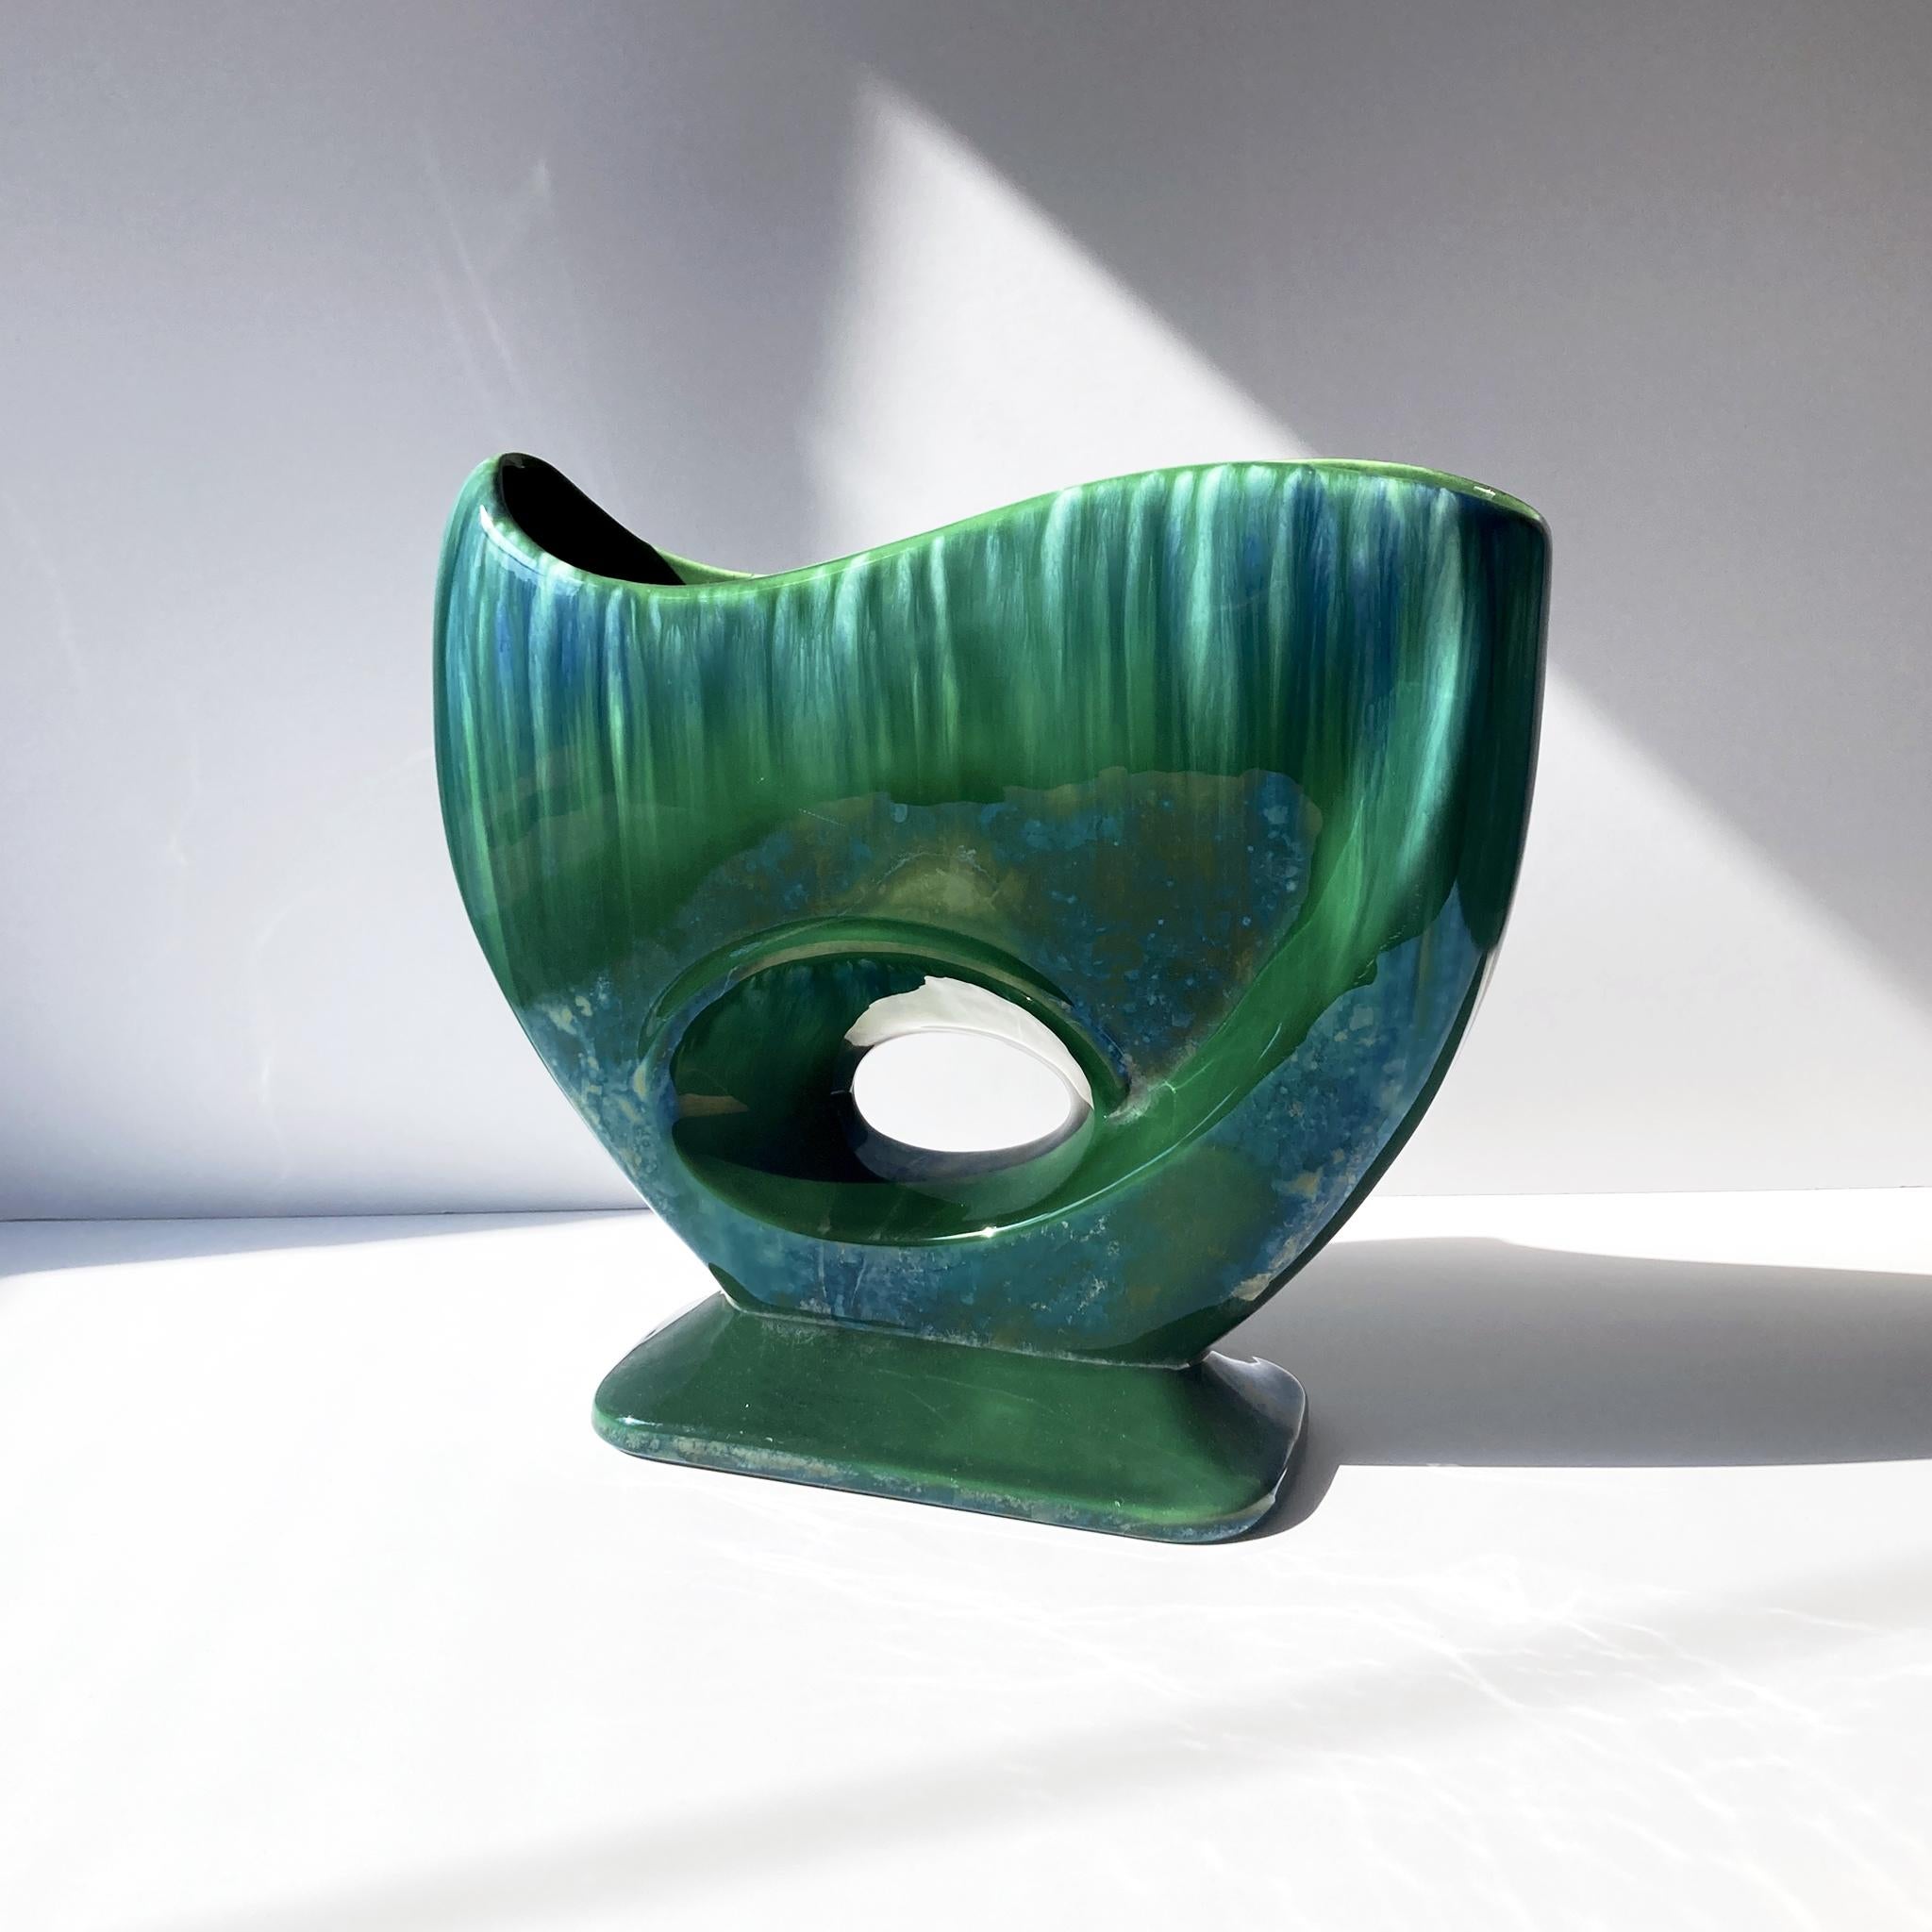 Superbe vase abstrait vert de Royal Haeger, de taille moyenne, modèle R886. Il est superbe seul ou en groupe. La glaçure en goutte d'eau capte magnifiquement la lumière et une légère glaçure lustrée recouvre le vert. En bon état vintage, quelques